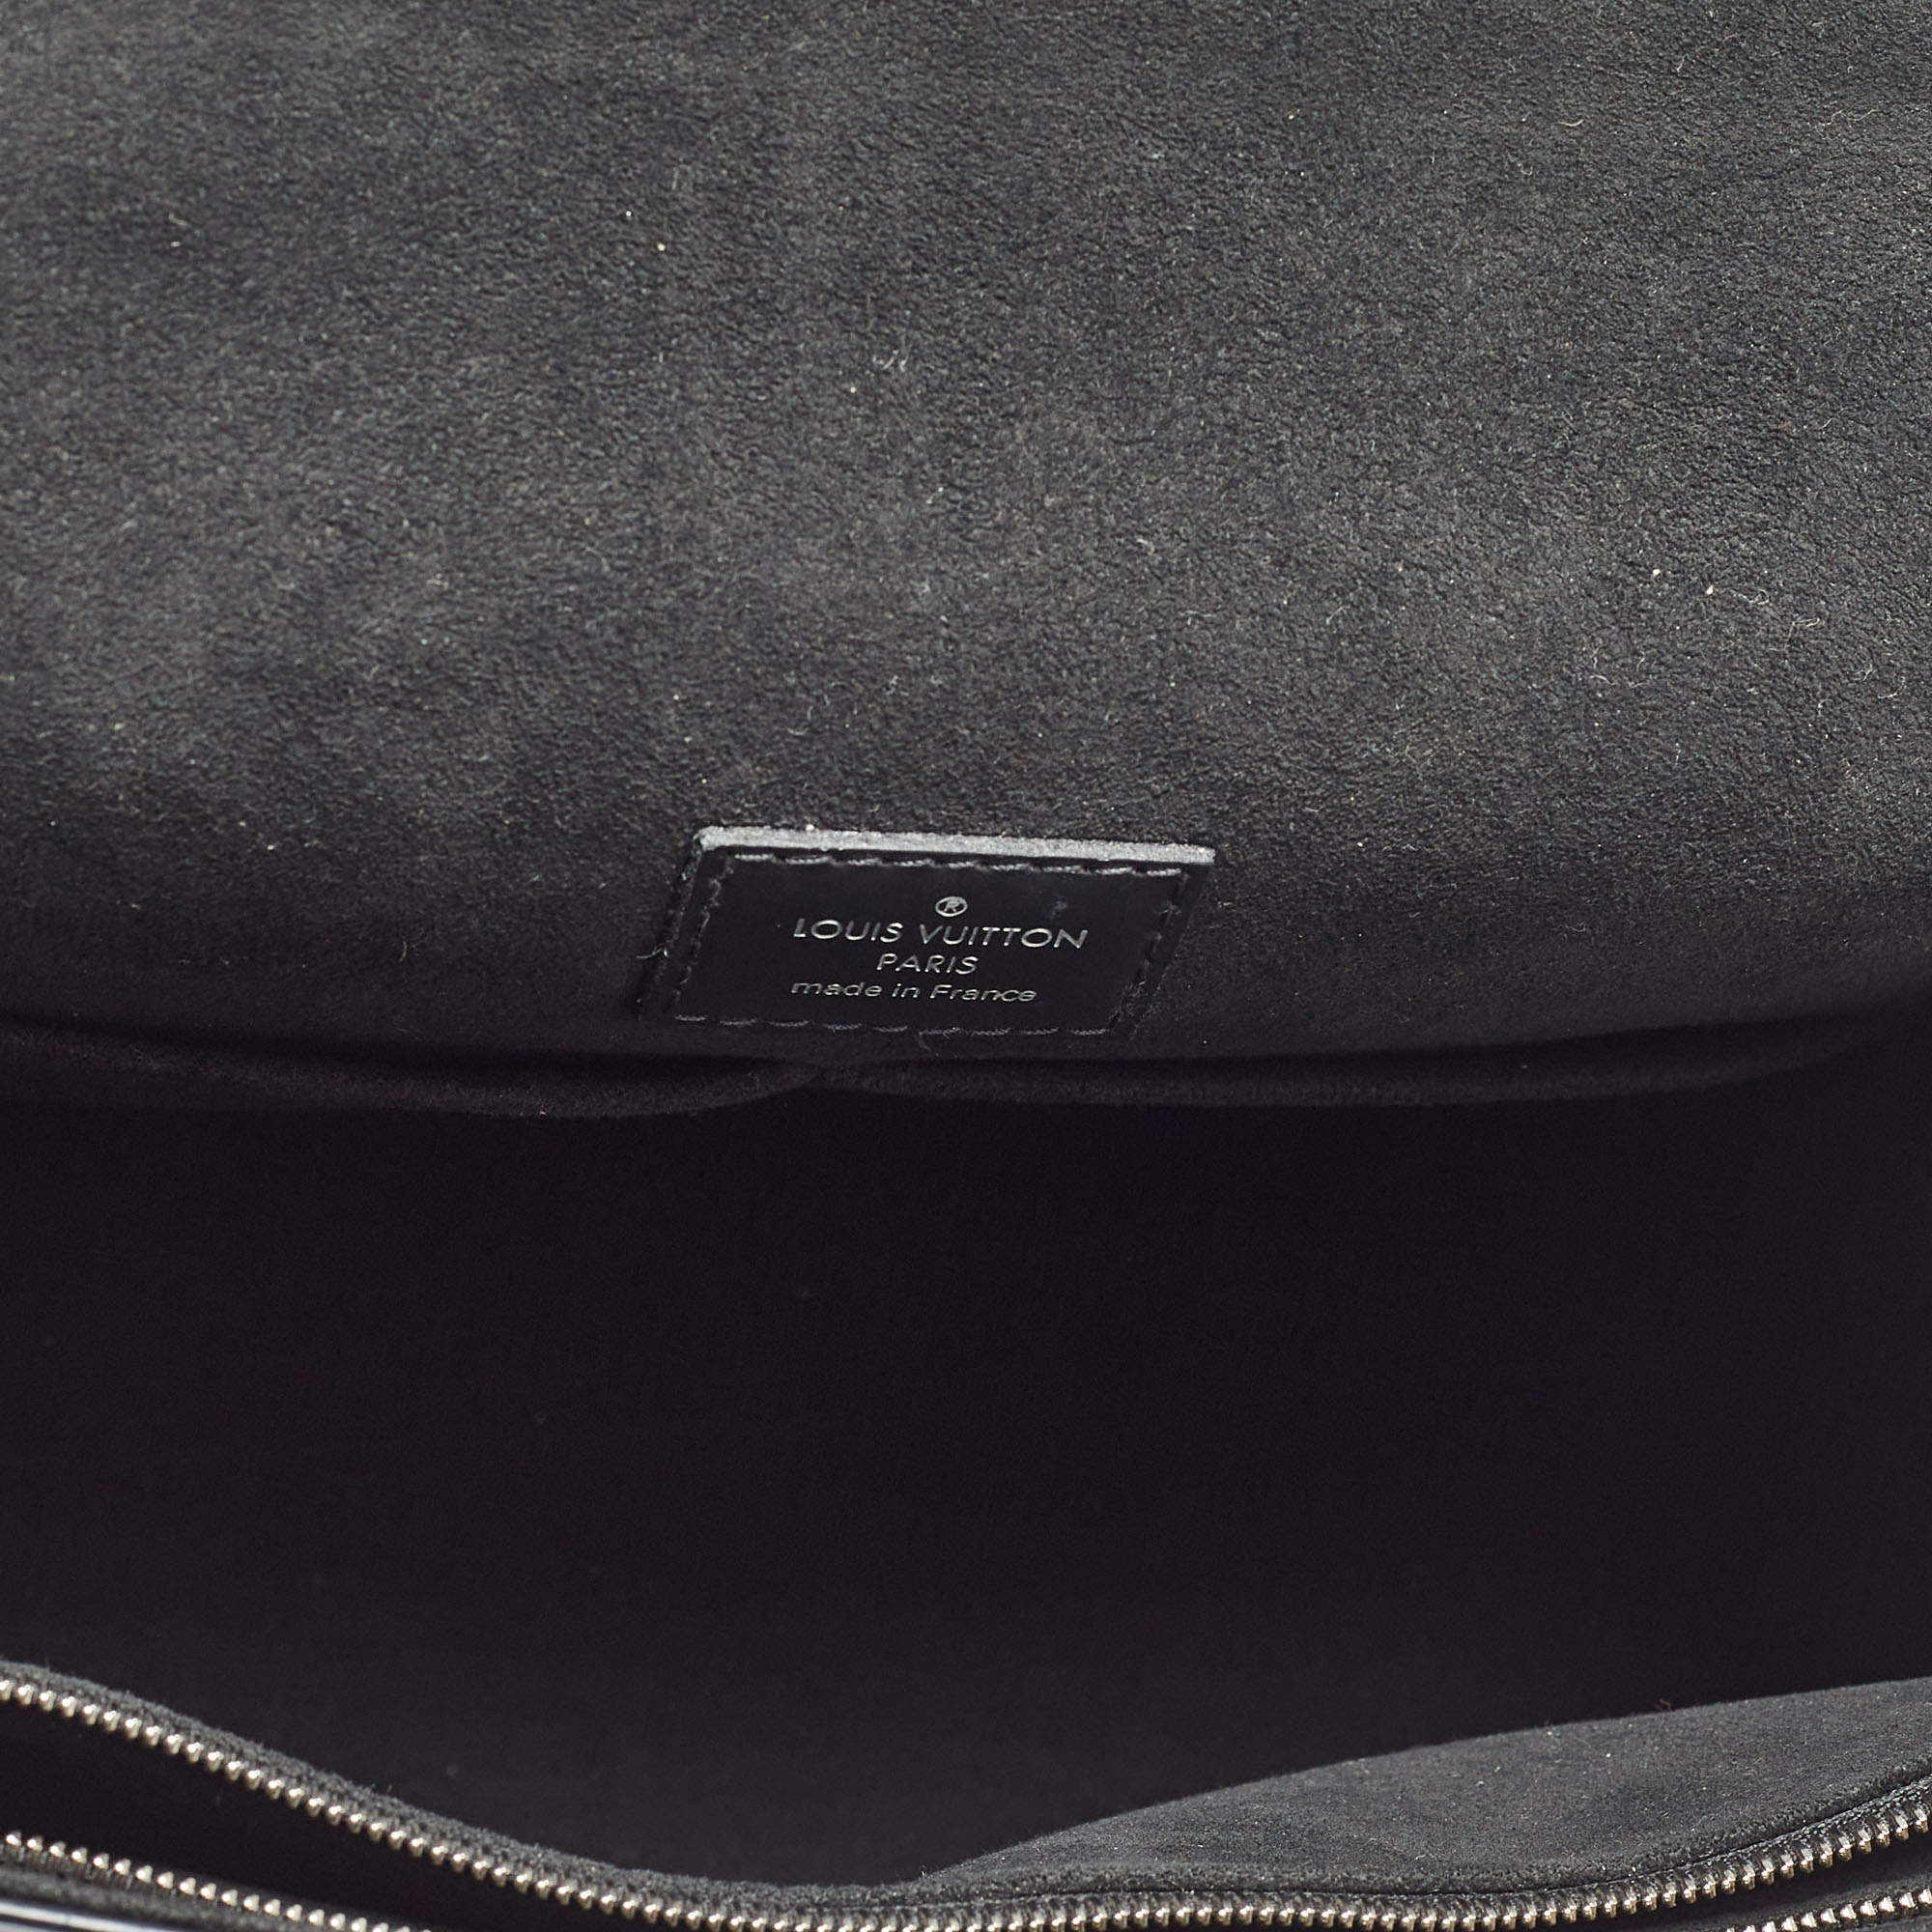 Cluny LOUIS VUITTON black epi leather bag - VALOIS VINTAGE PARIS